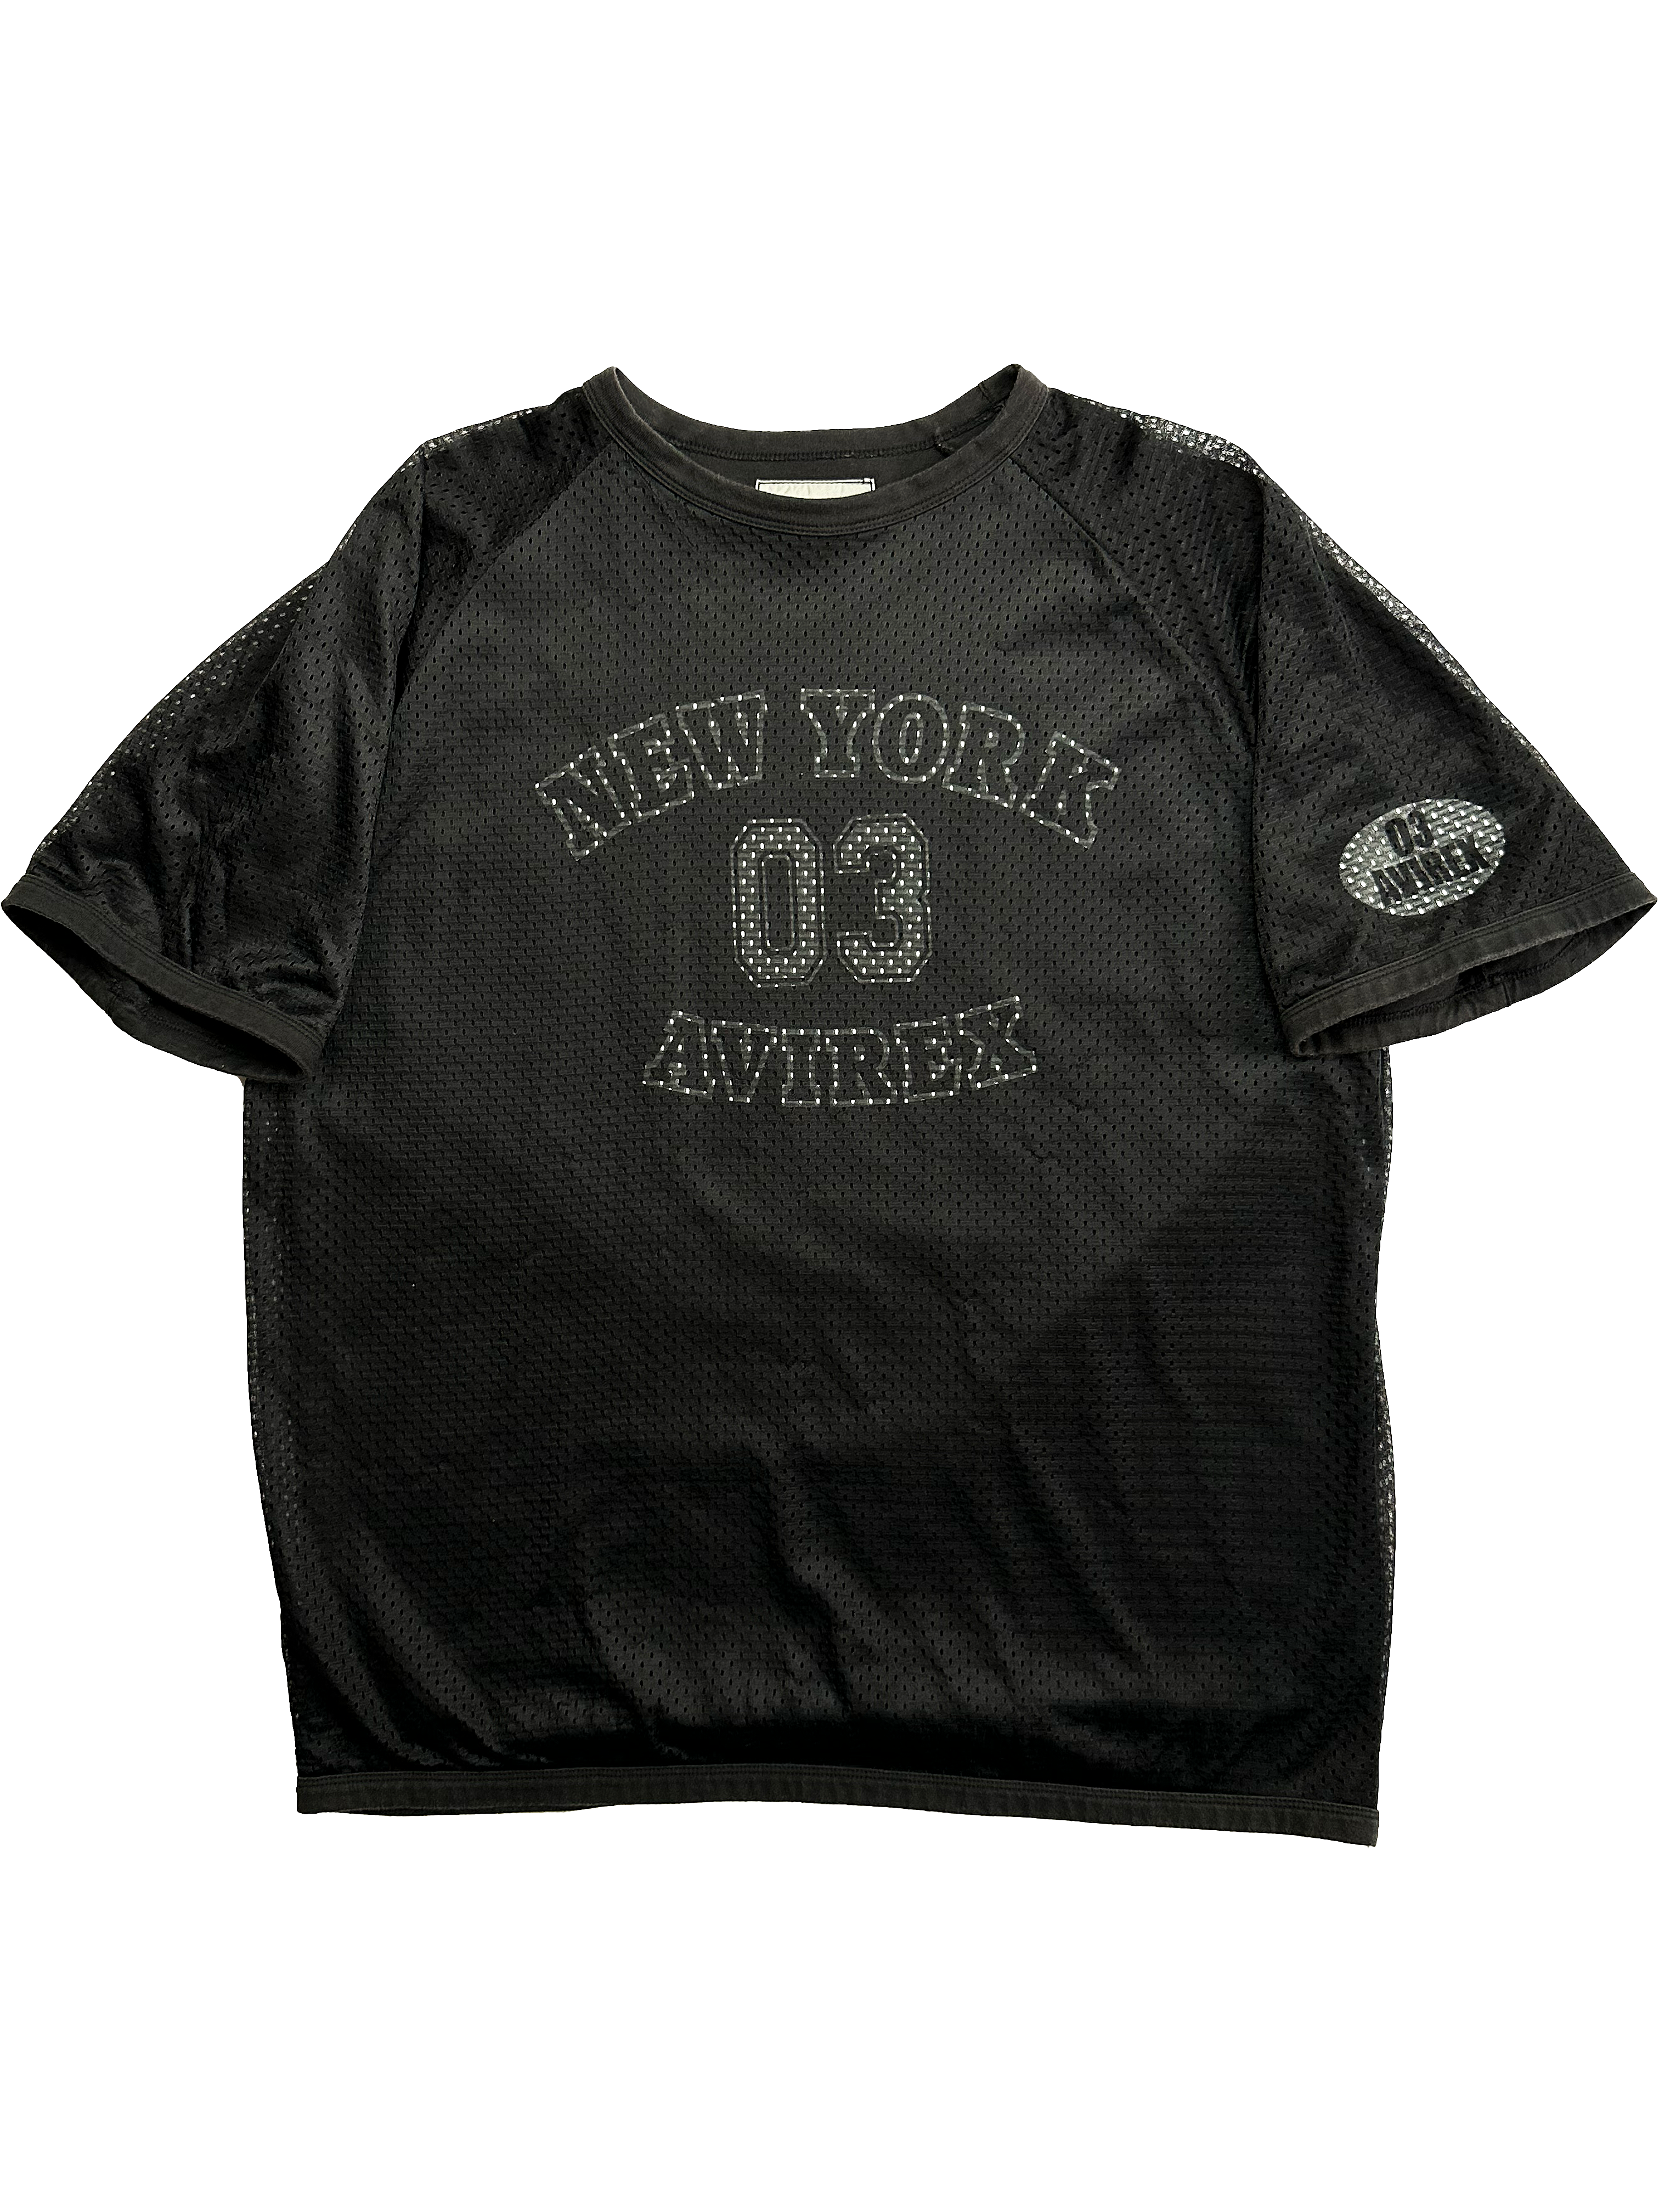 Avirex Black Mesh Spell Out T-shirt 90's